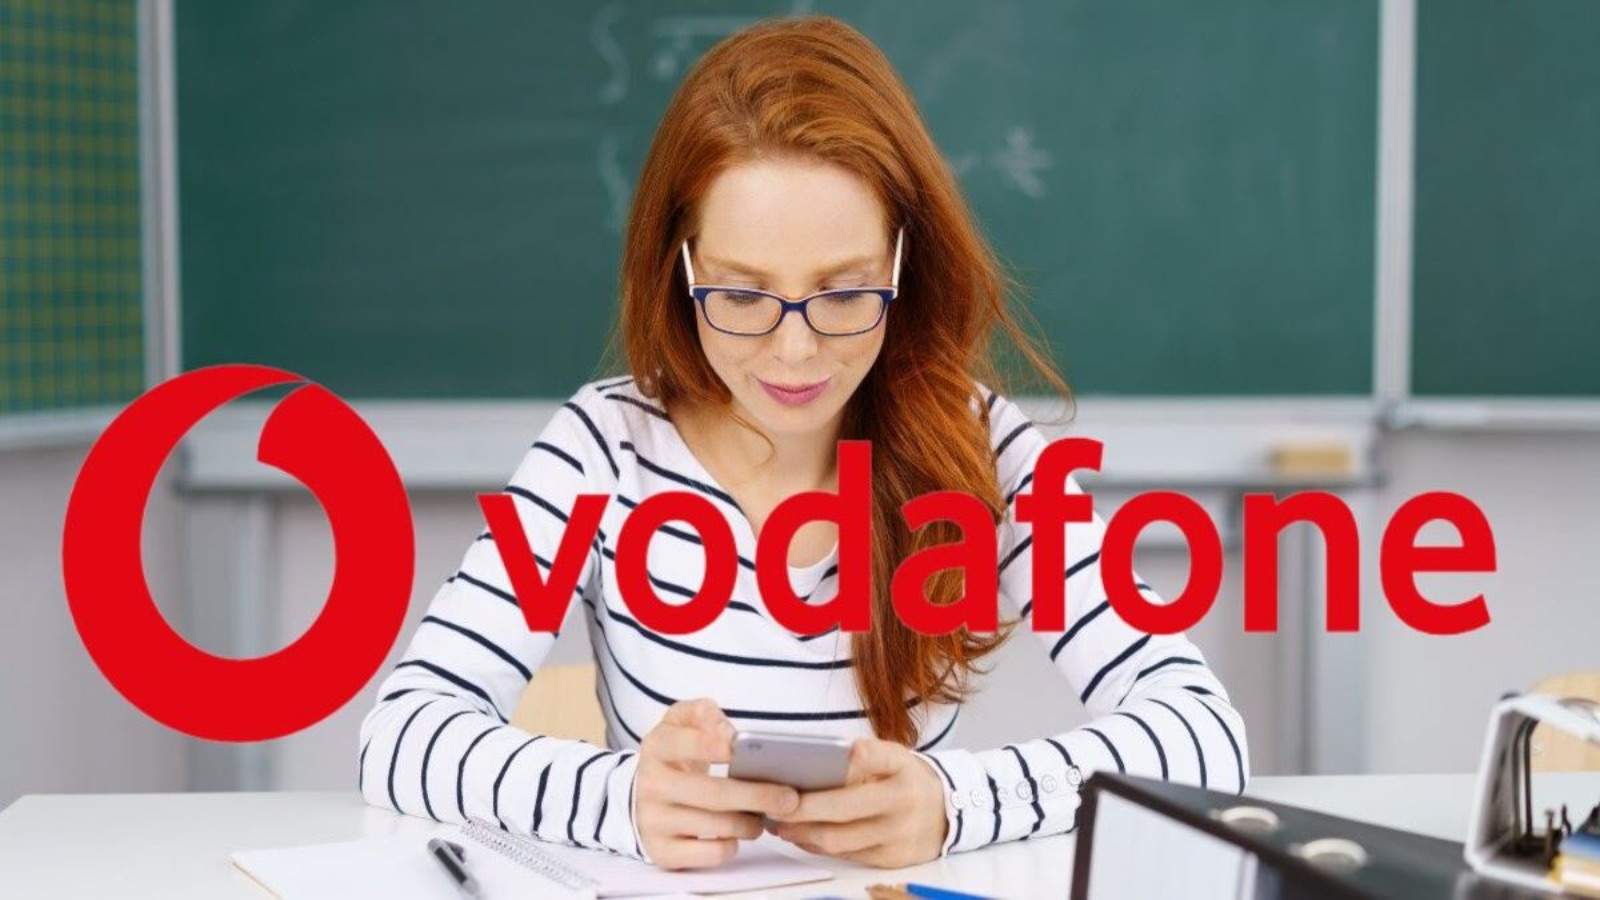 Vodafone, le nuove SILVER hanno distrutto TIM e Iliad: costano 7 EURO